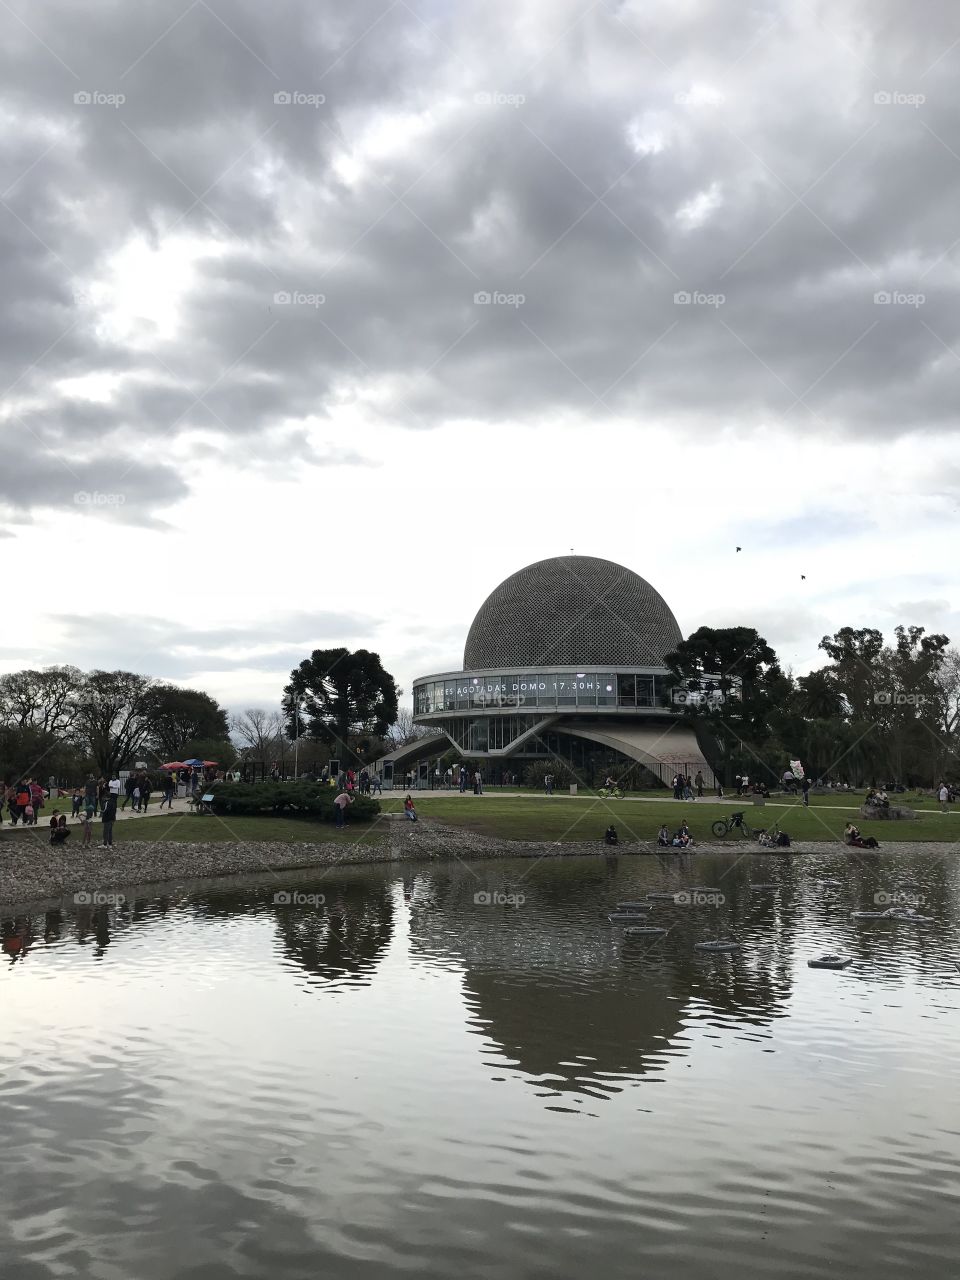 Brutal planetarium. Buenos Aires